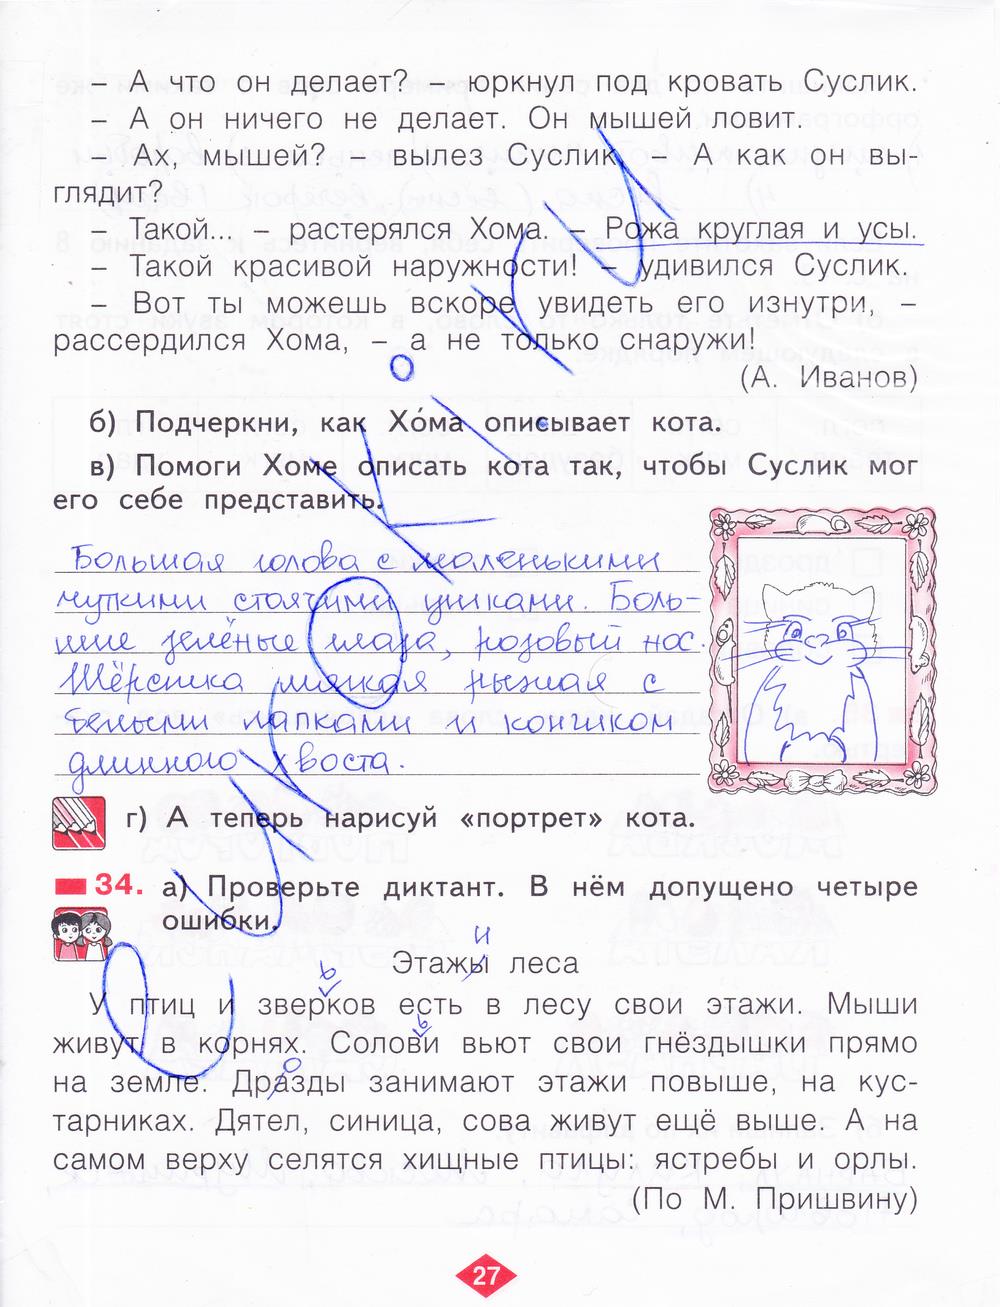 гдз 2 класс рабочая тетрадь часть 4 страница 27 русский язык Яковлева